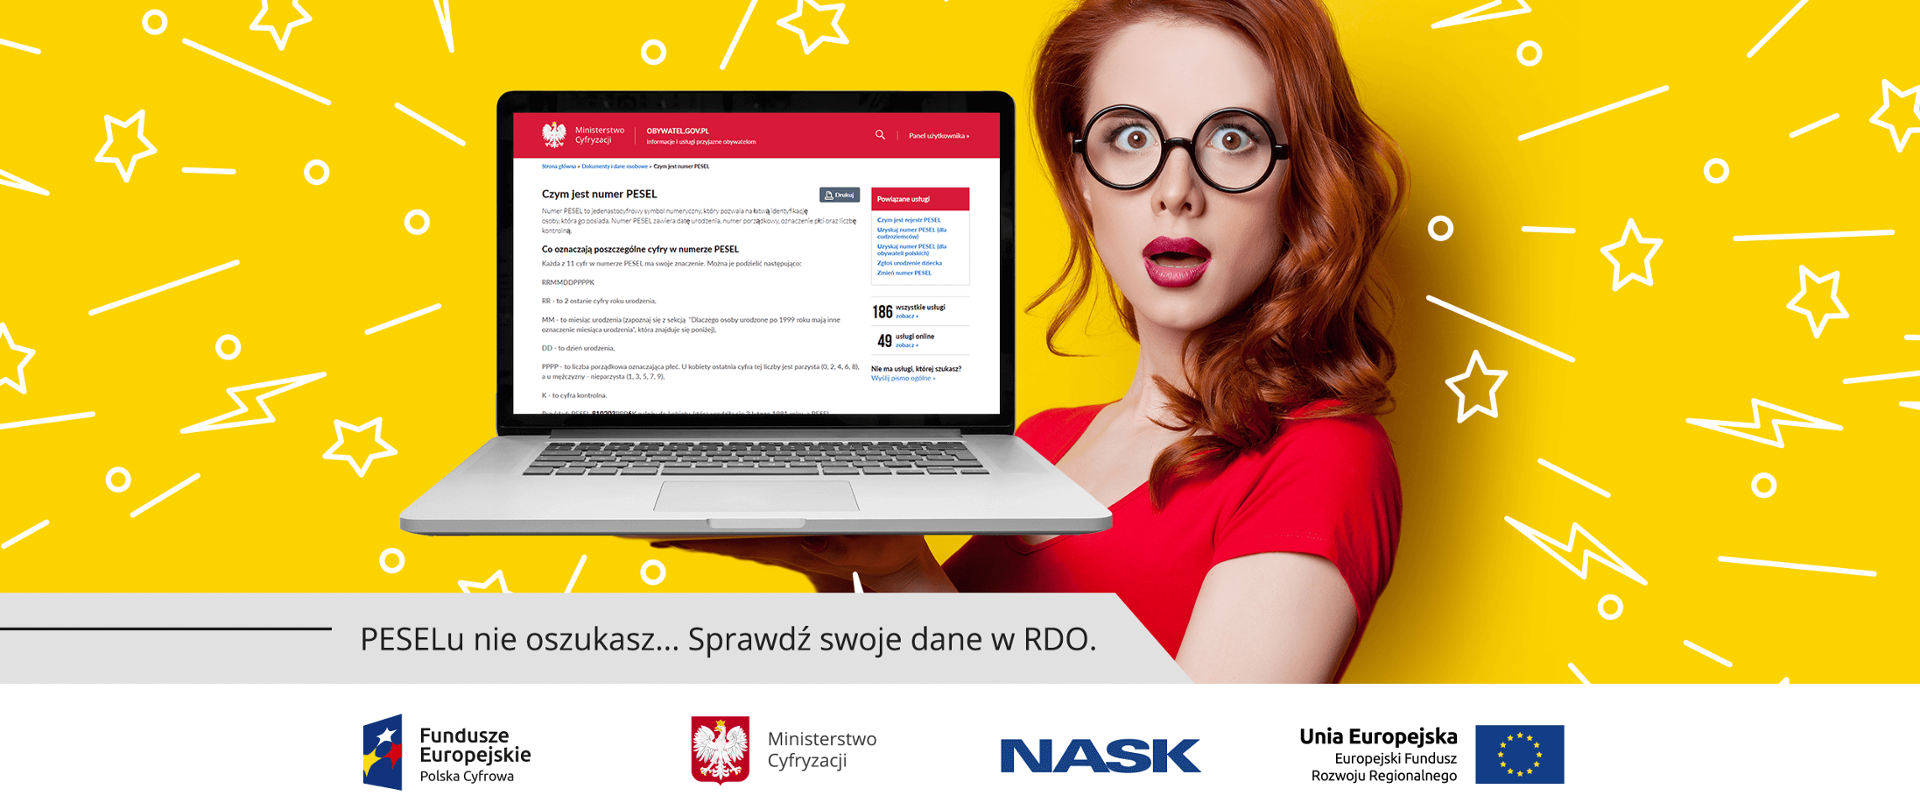 Zaskoczona kobieta w okularach w czerwonej sukience trzyma laptopa z wyświetloną stroną "Czym jest numer PESEL".